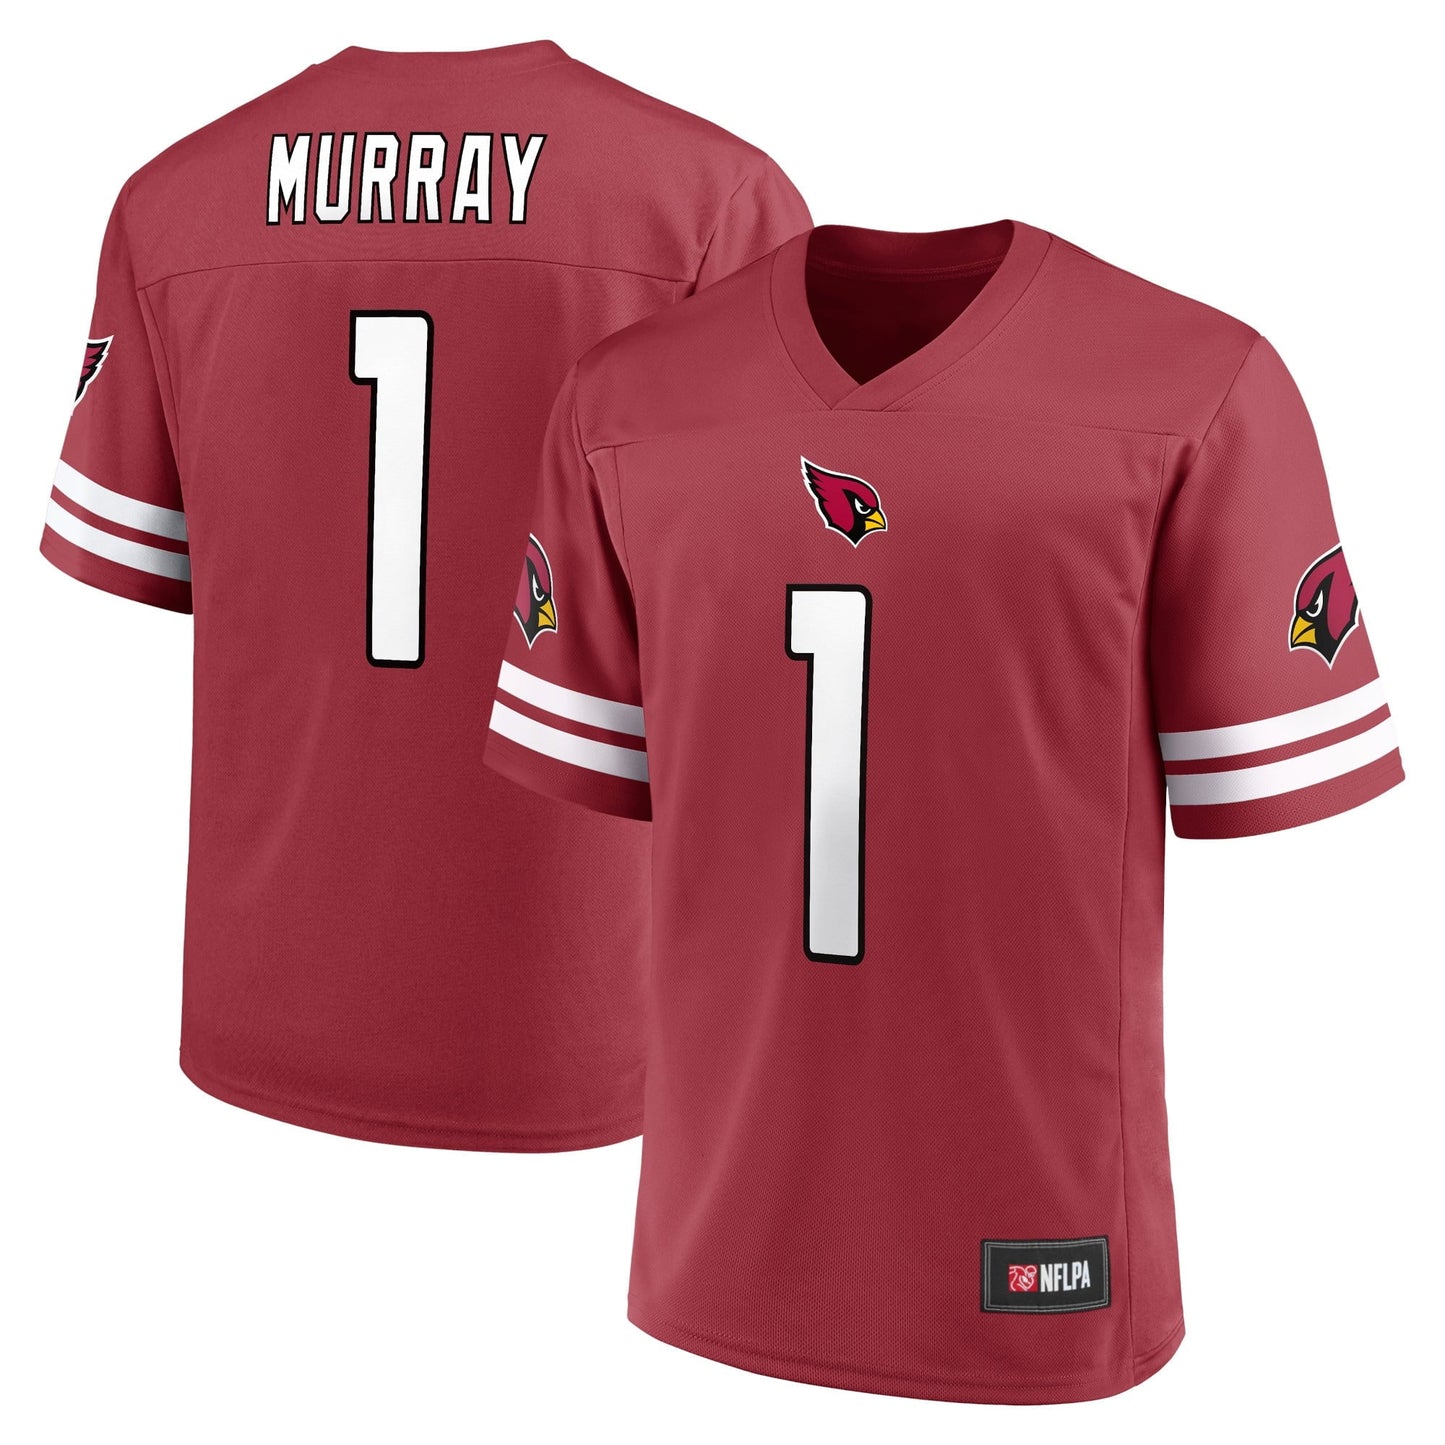 Men's Fanatics Branded Kyler Murray Cardinal Arizona Cardinals Replica Player Jersey